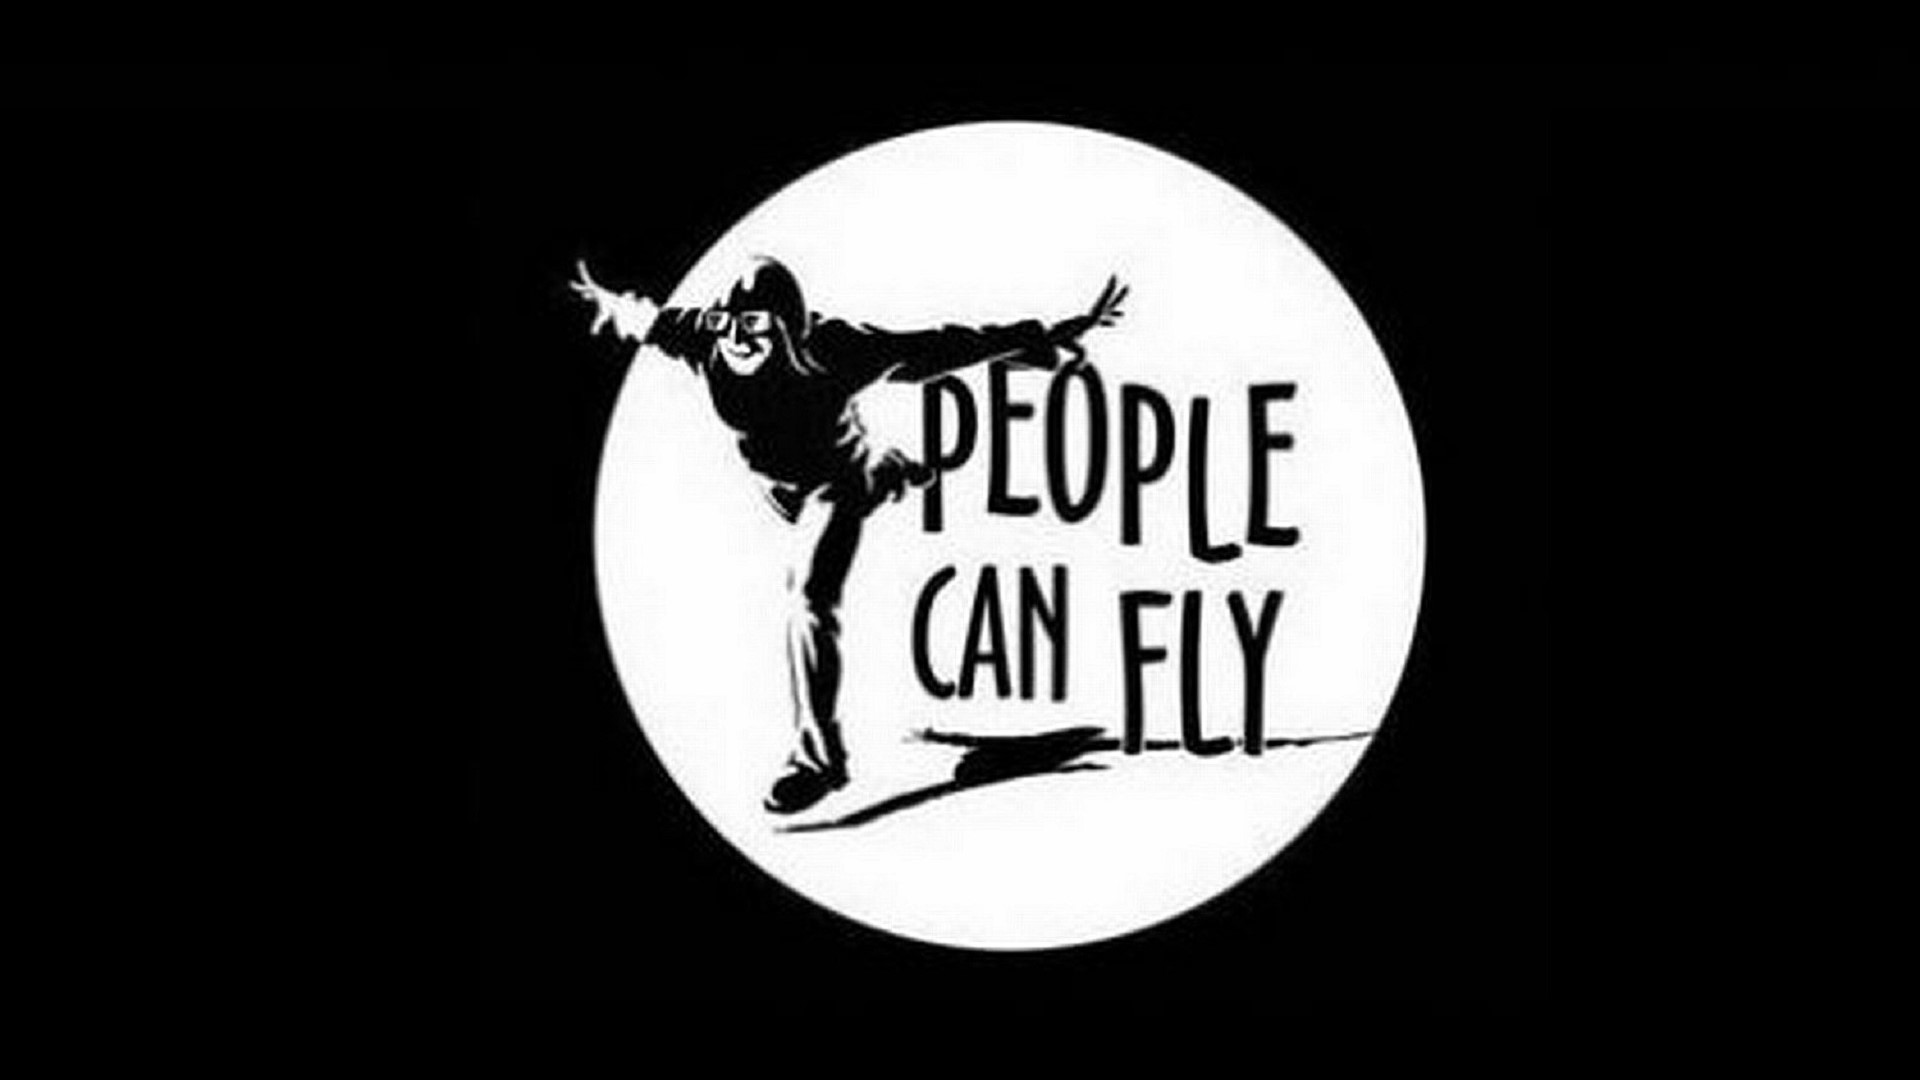 Logotip de la gent pot volar